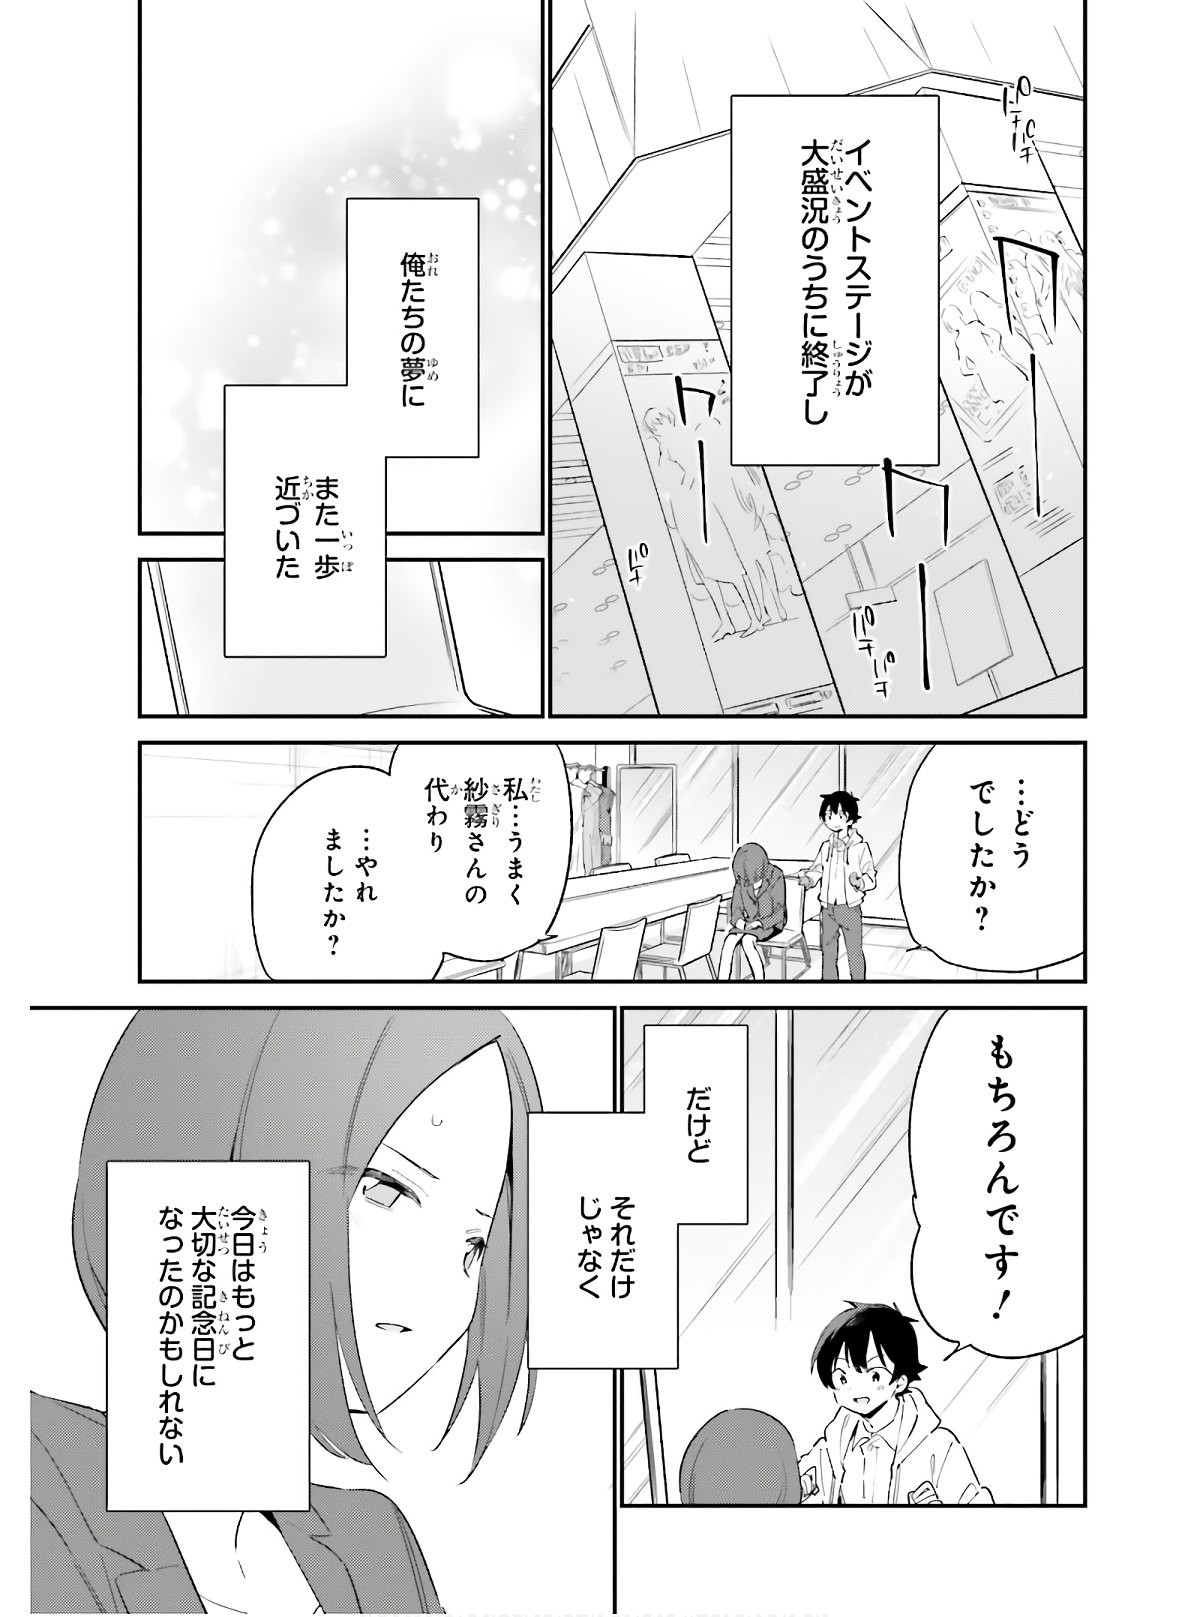 Ero Manga Sensei - Chapter 67 - Page 25